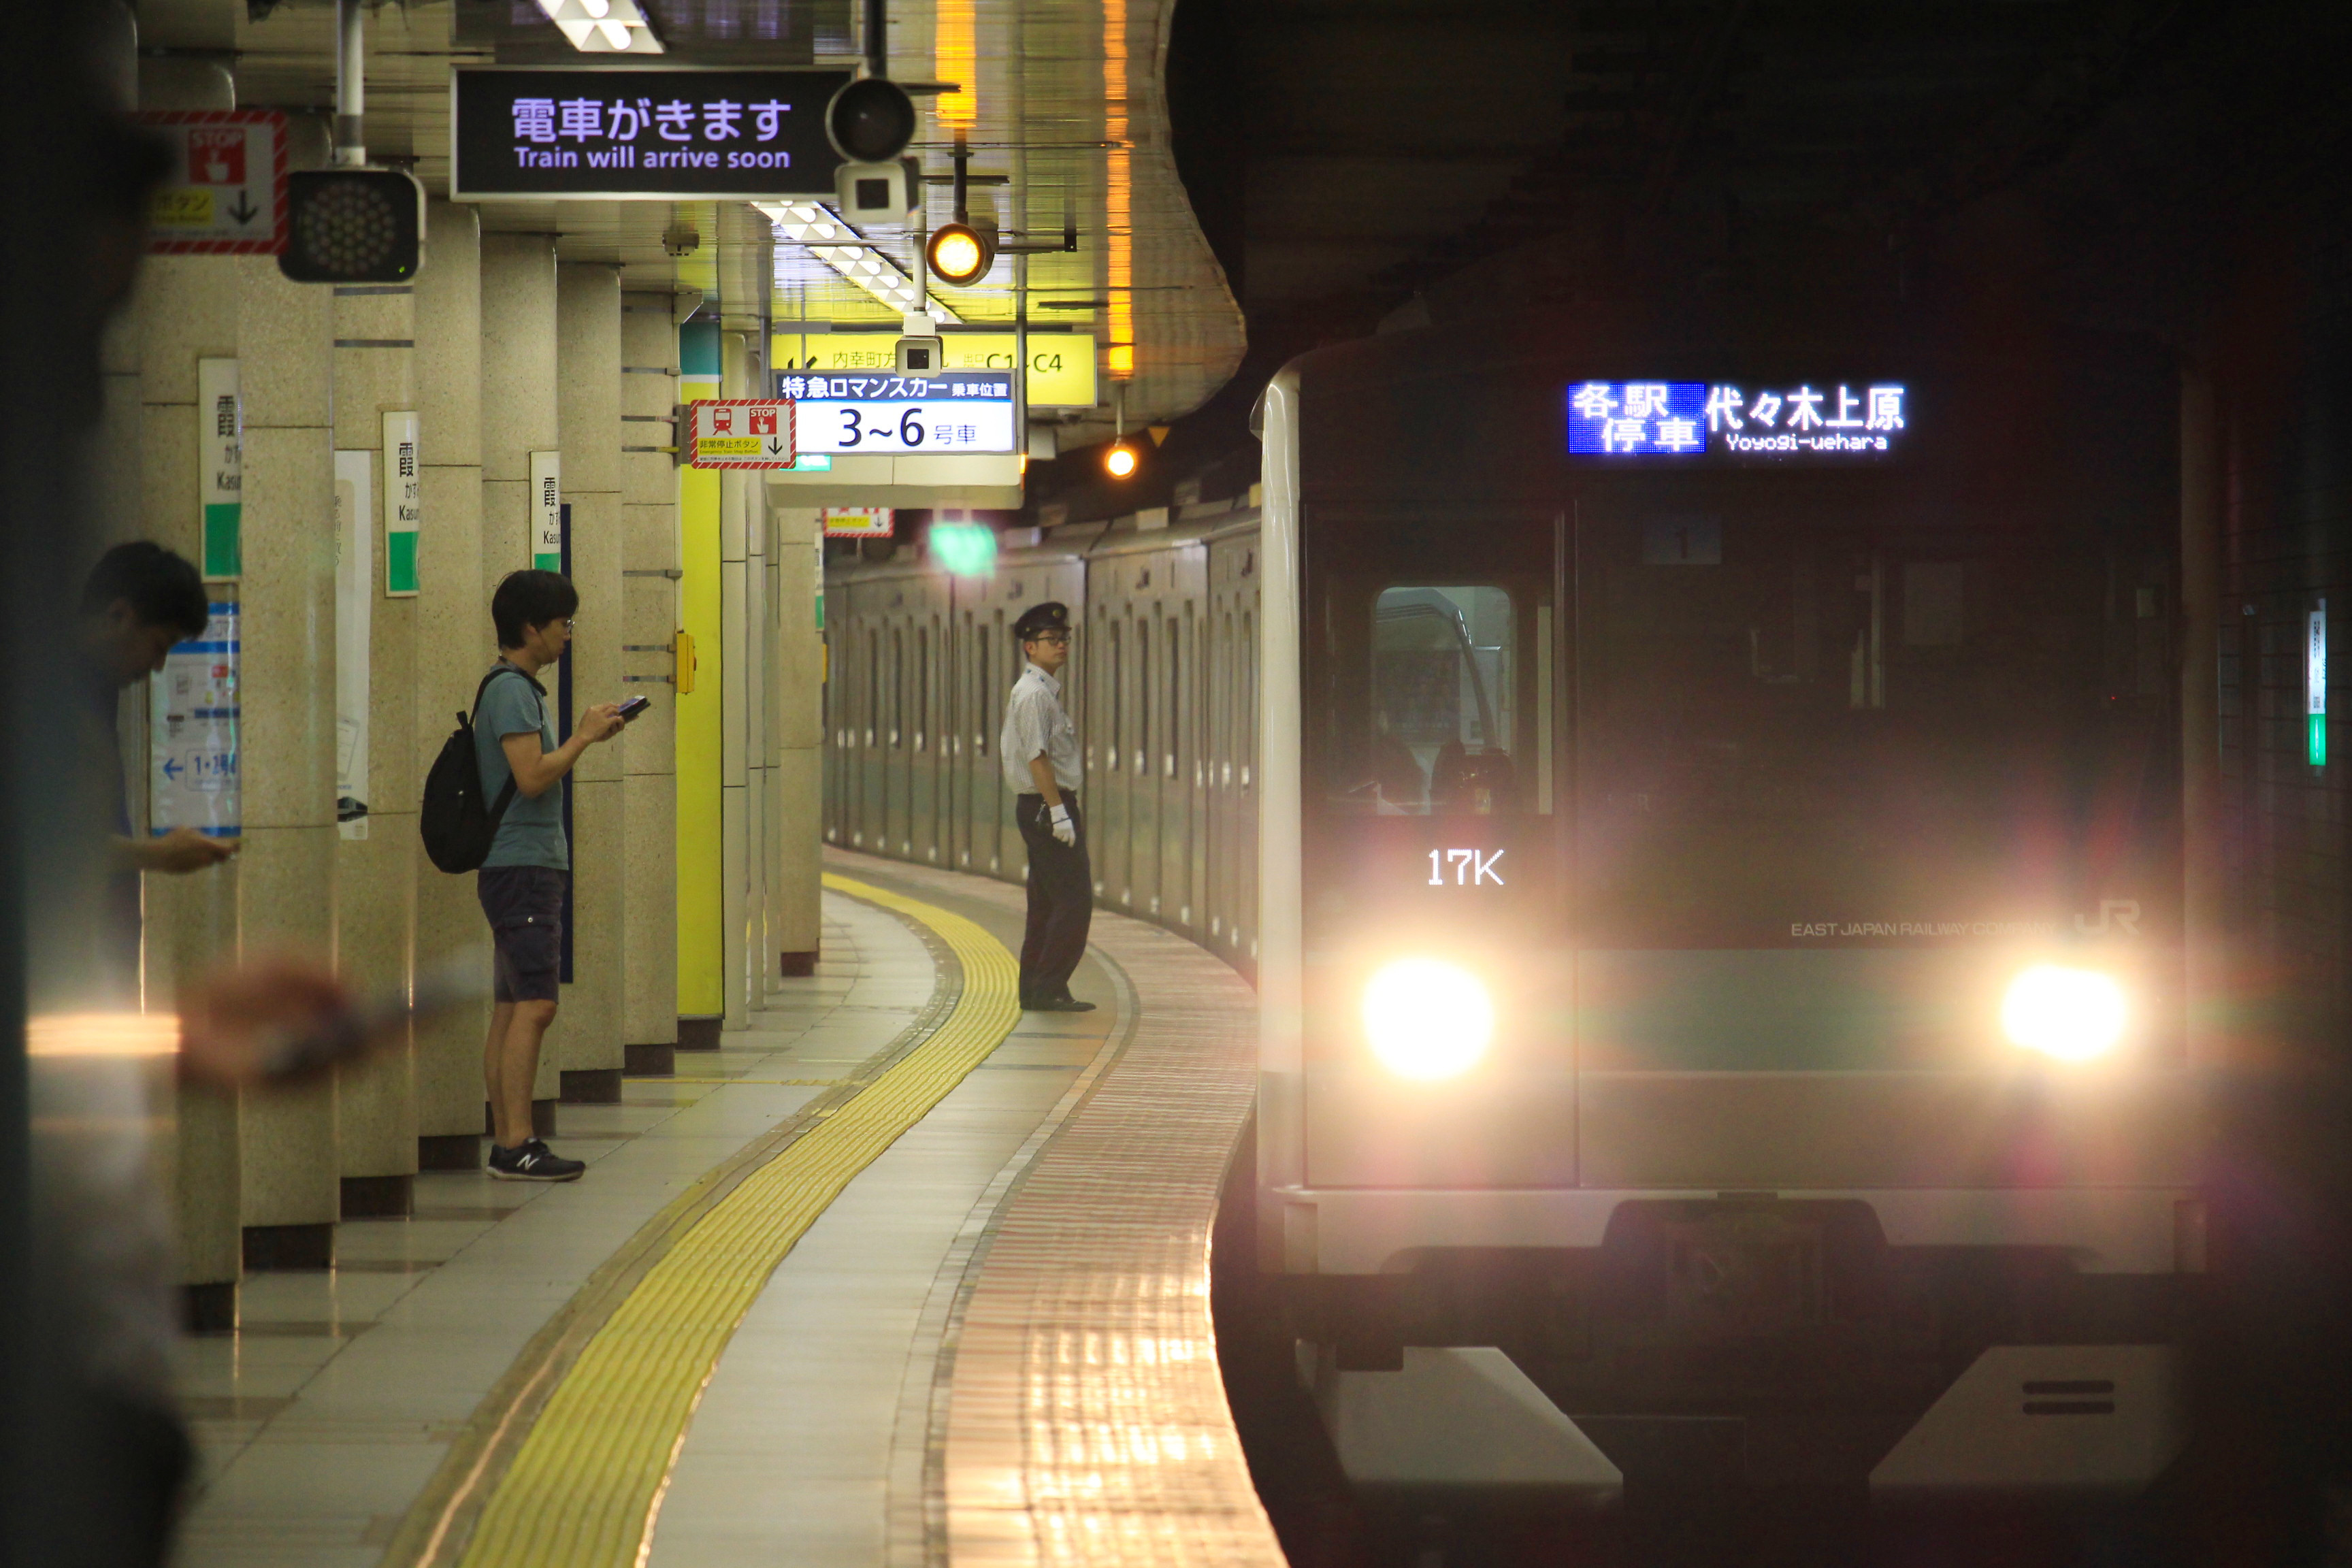 東京地下鉄 ミニ 巡り 19年9月7日 首都圏遠征記part6 Yuuのブログ3rd